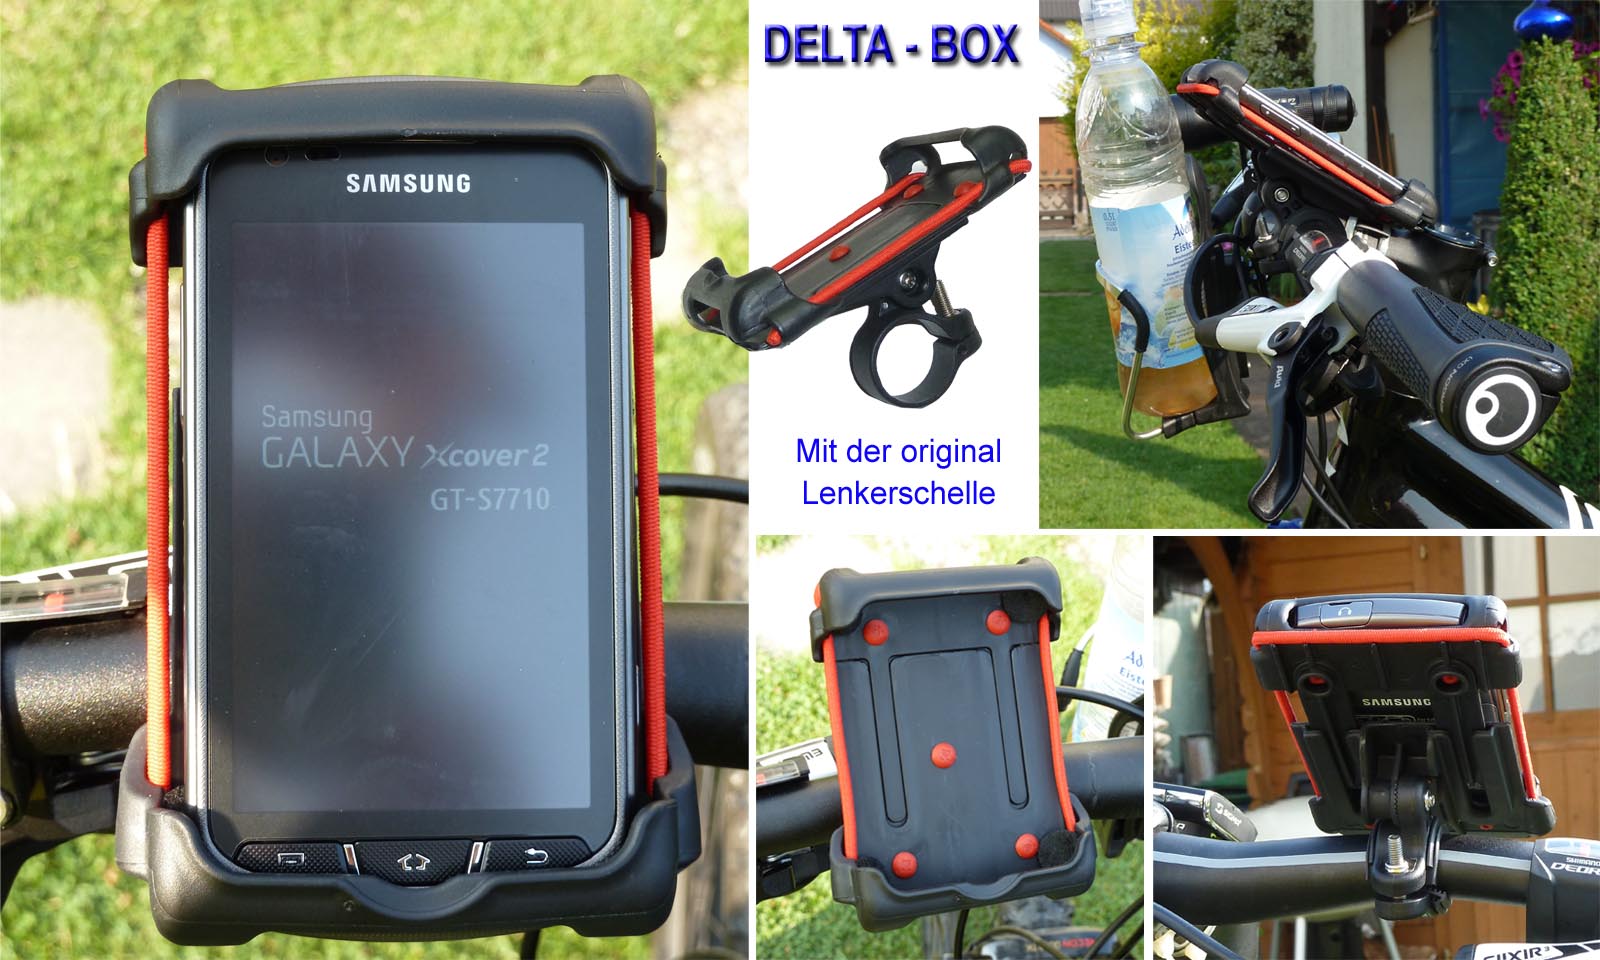 Schliessen von DELTA-BOX_Samsung-Galaxy-Xcover-2_Lenkerschelle_MTB_Buechner.jpg